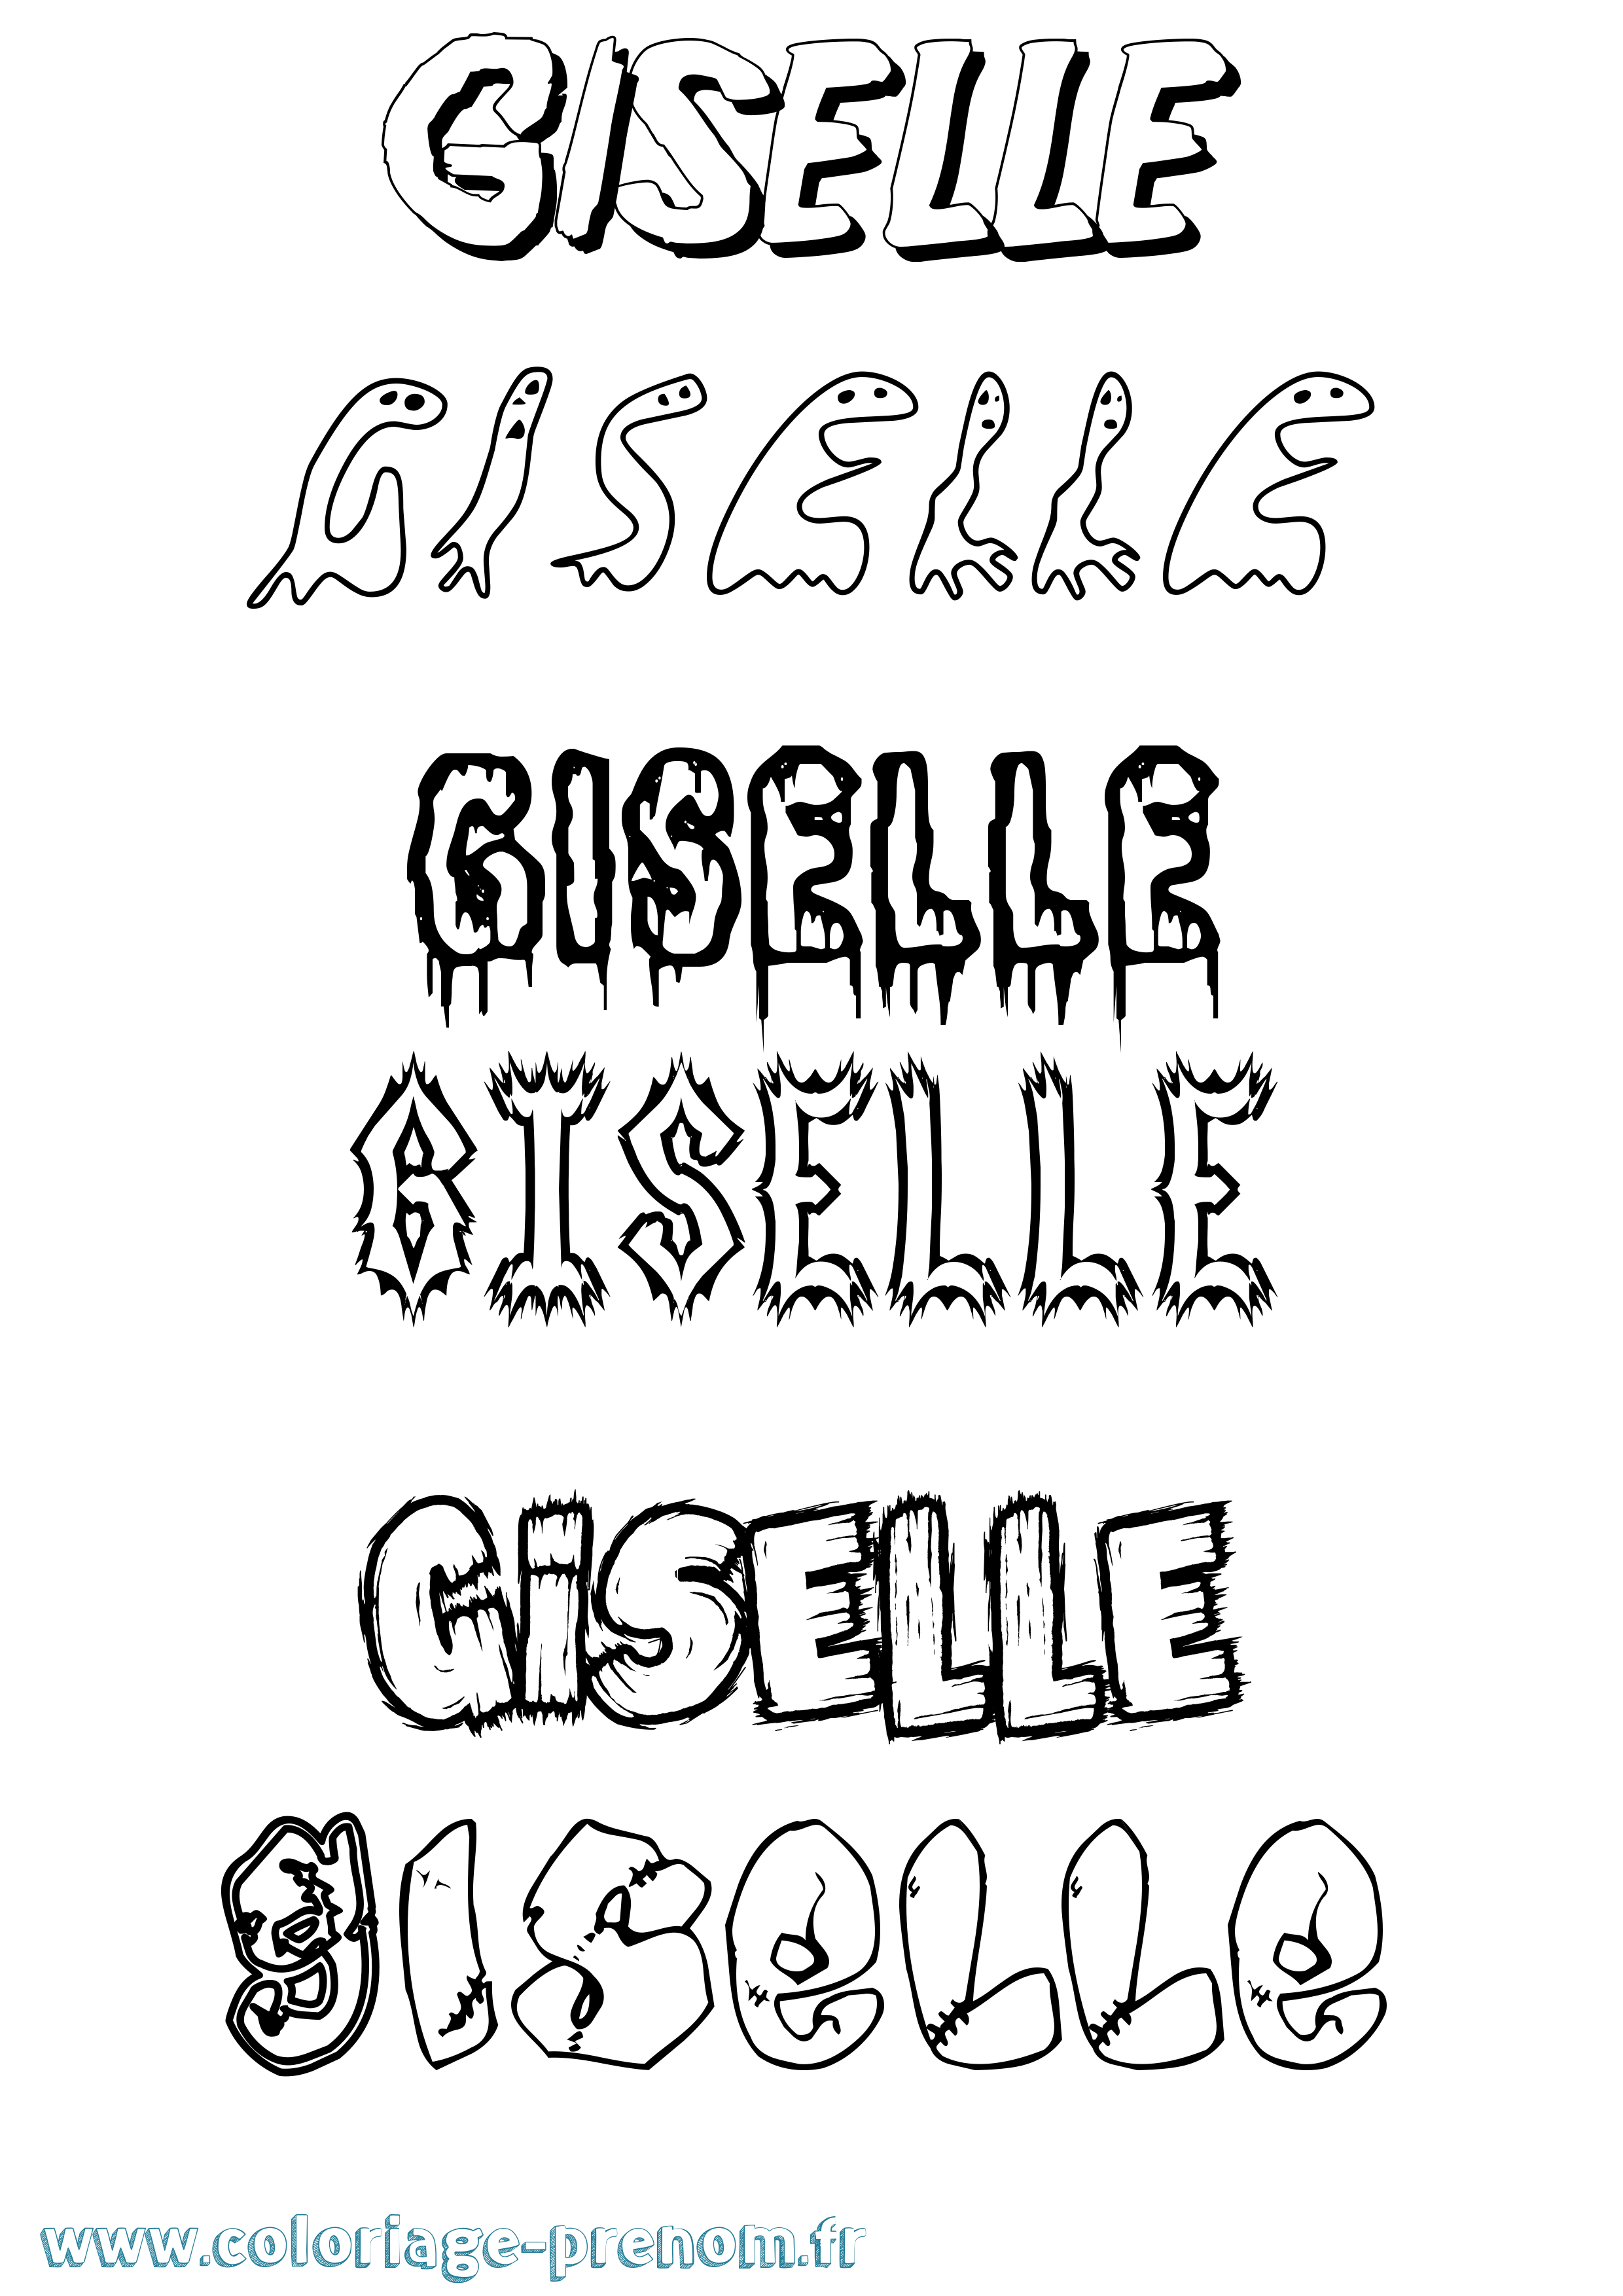 Coloriage prénom Giselle Frisson